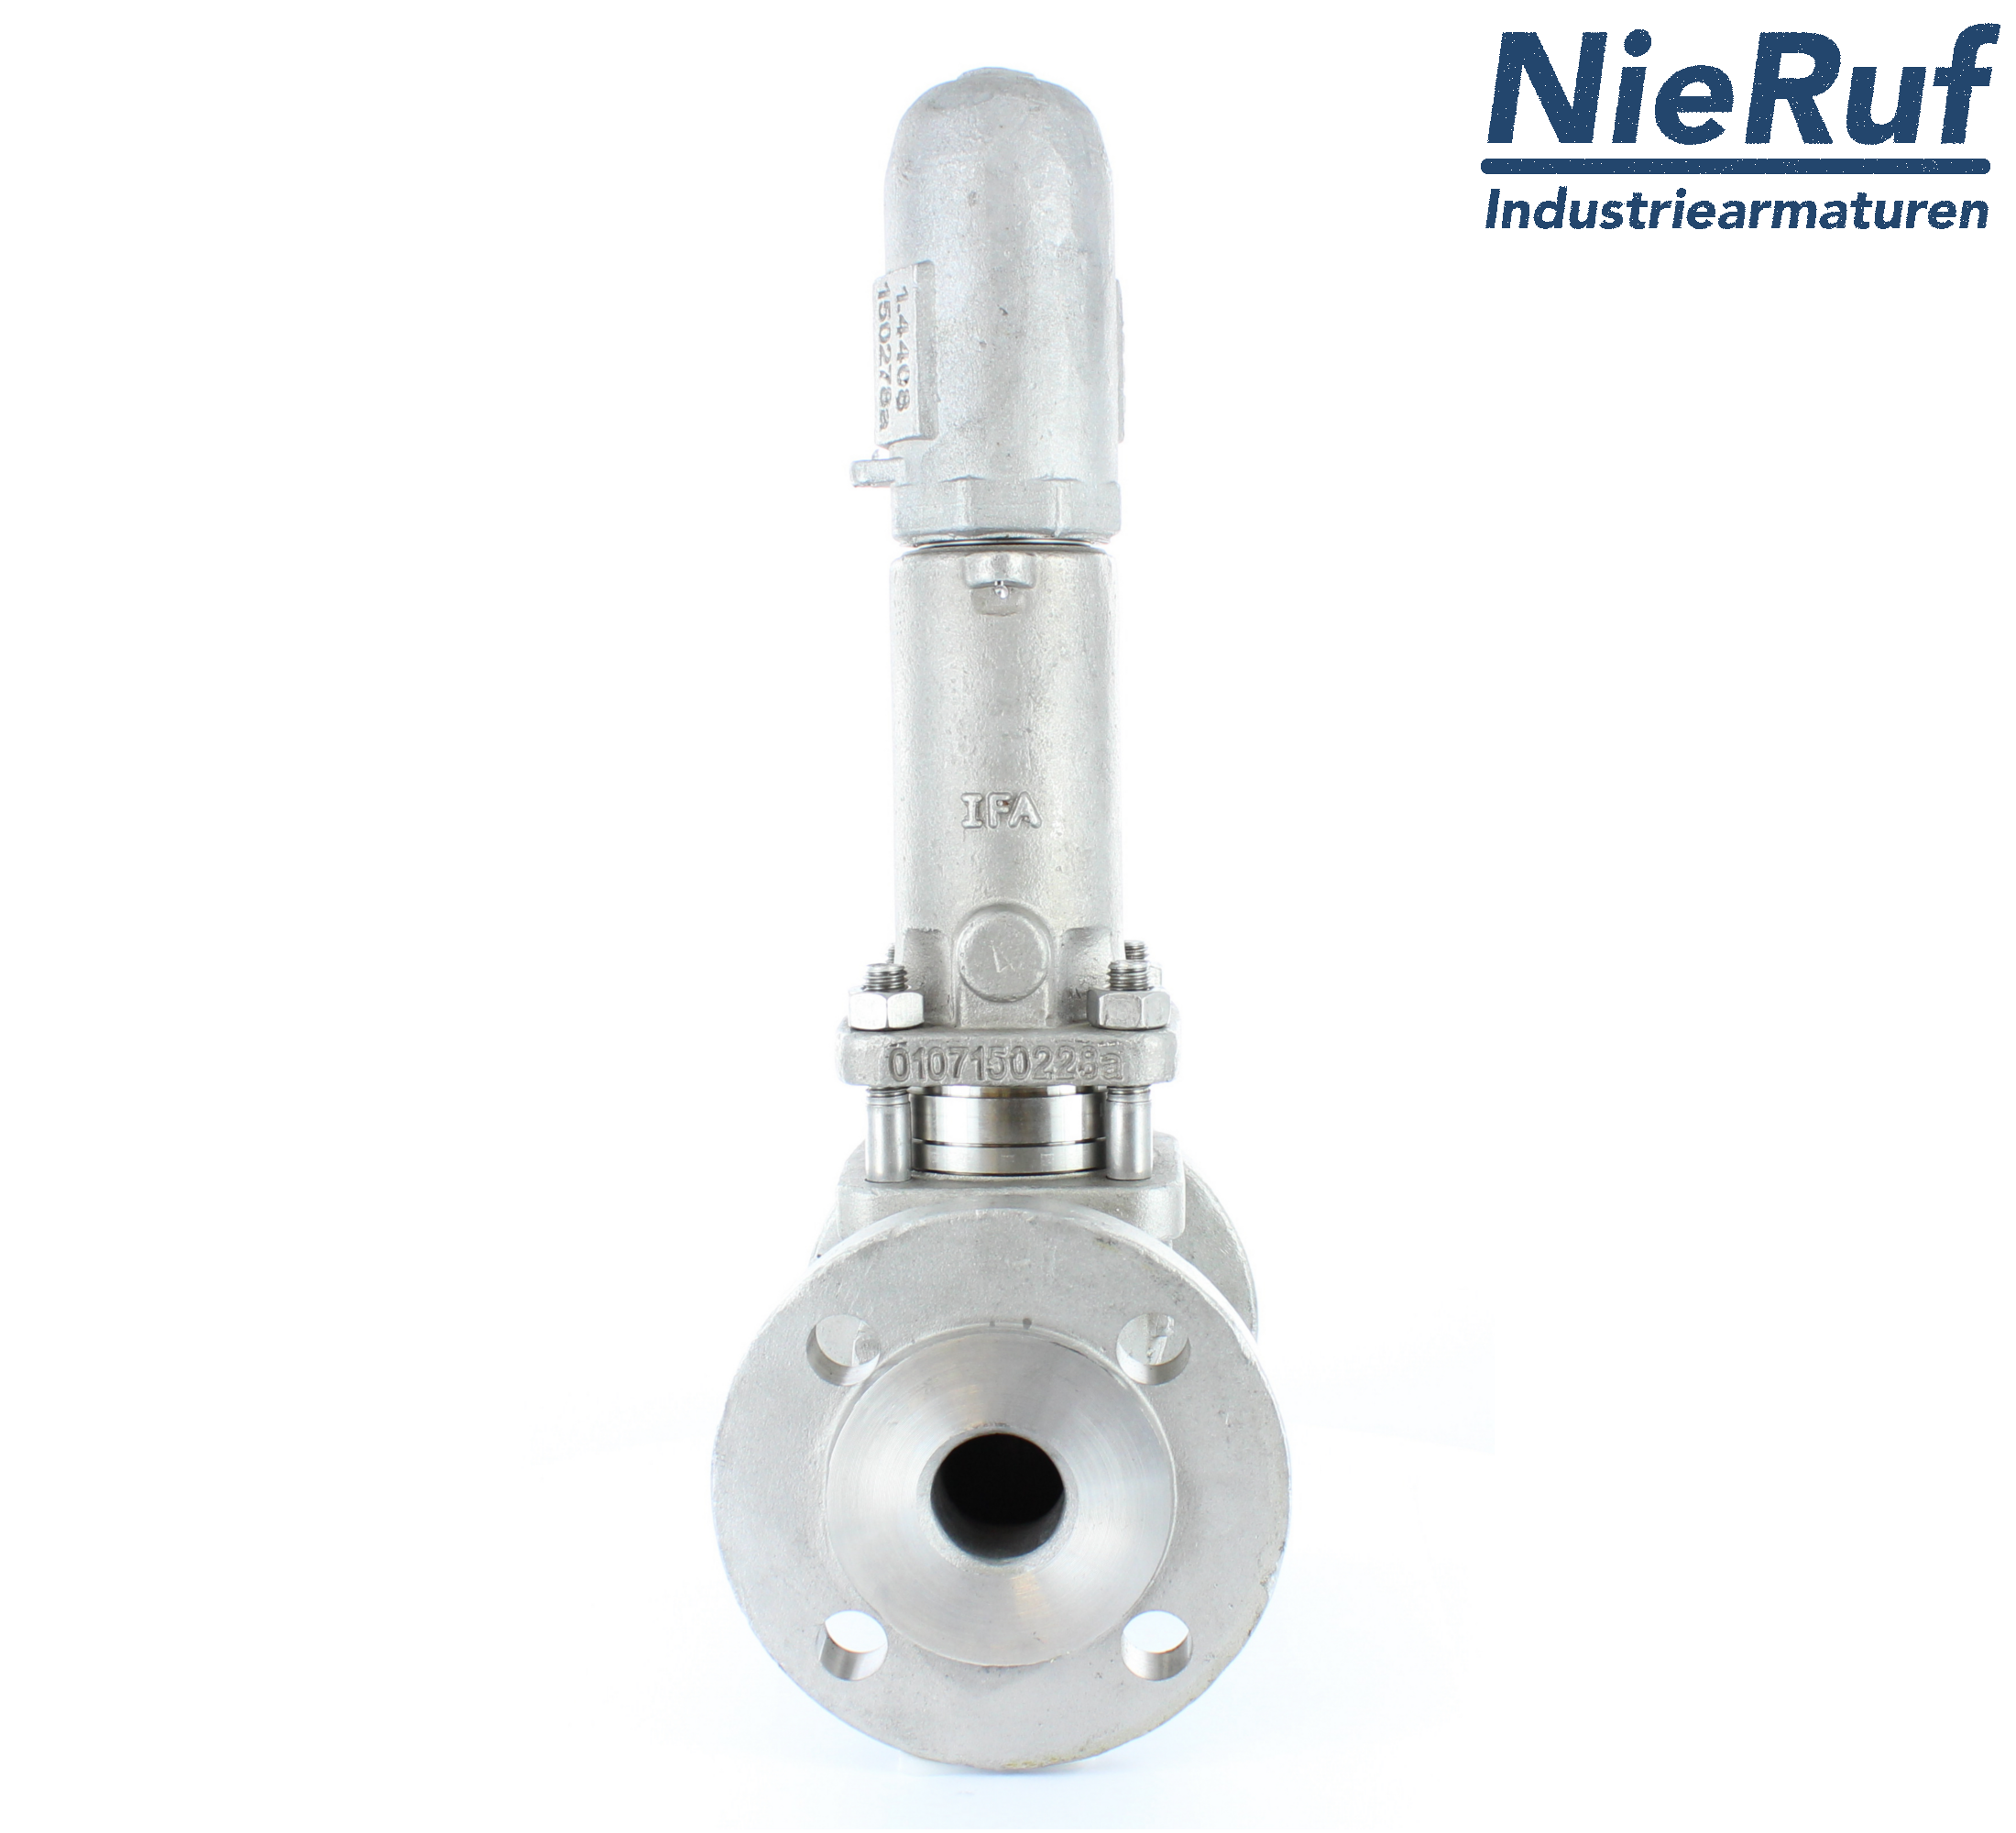 piston overflow valve DN 15 UV13 cast iron 1.0619+N 4,0 - 10,0 bar